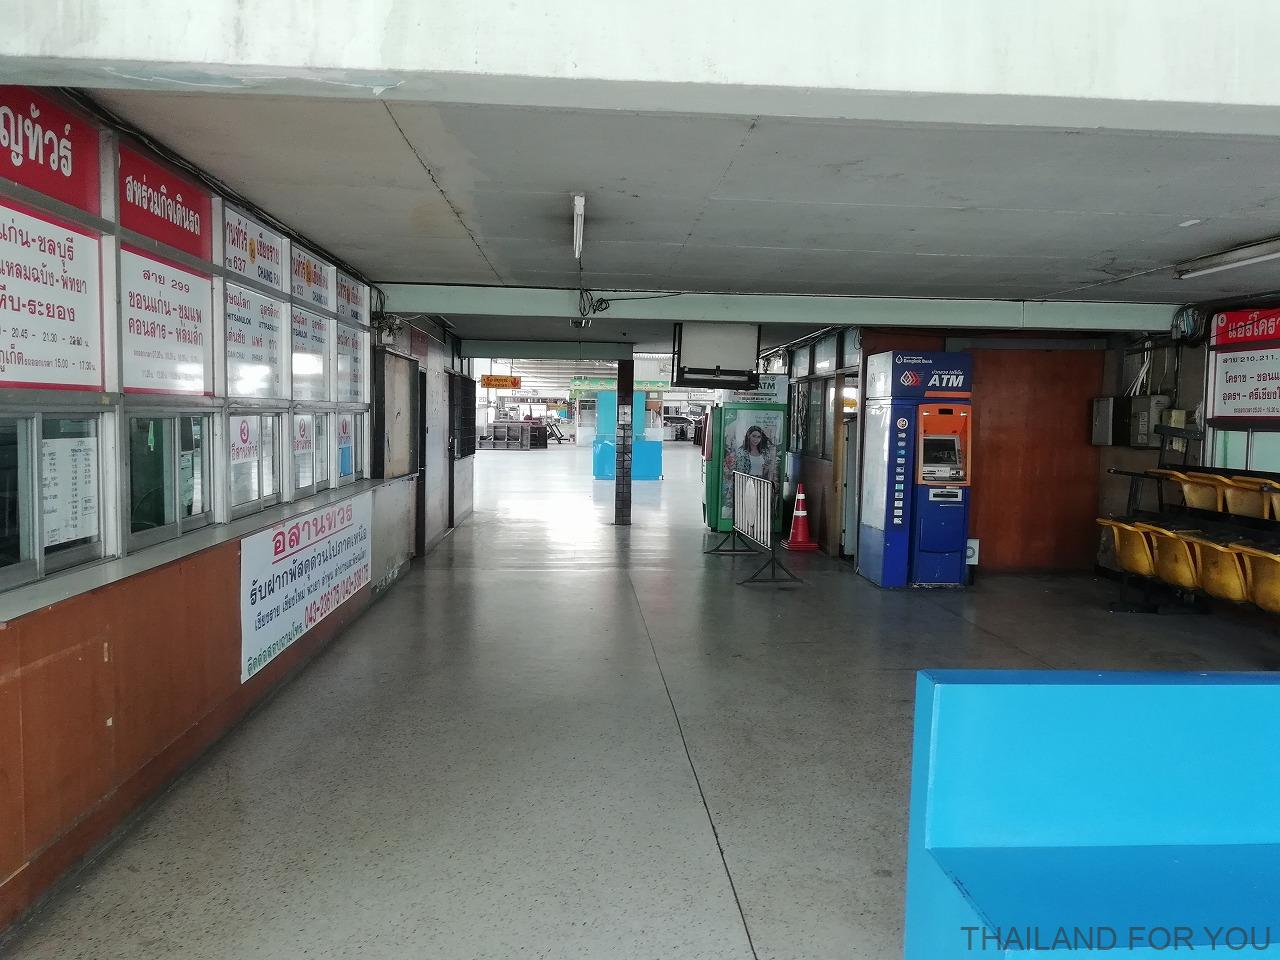 コンケン バスターミナル1 khon kaen bus terminal 1